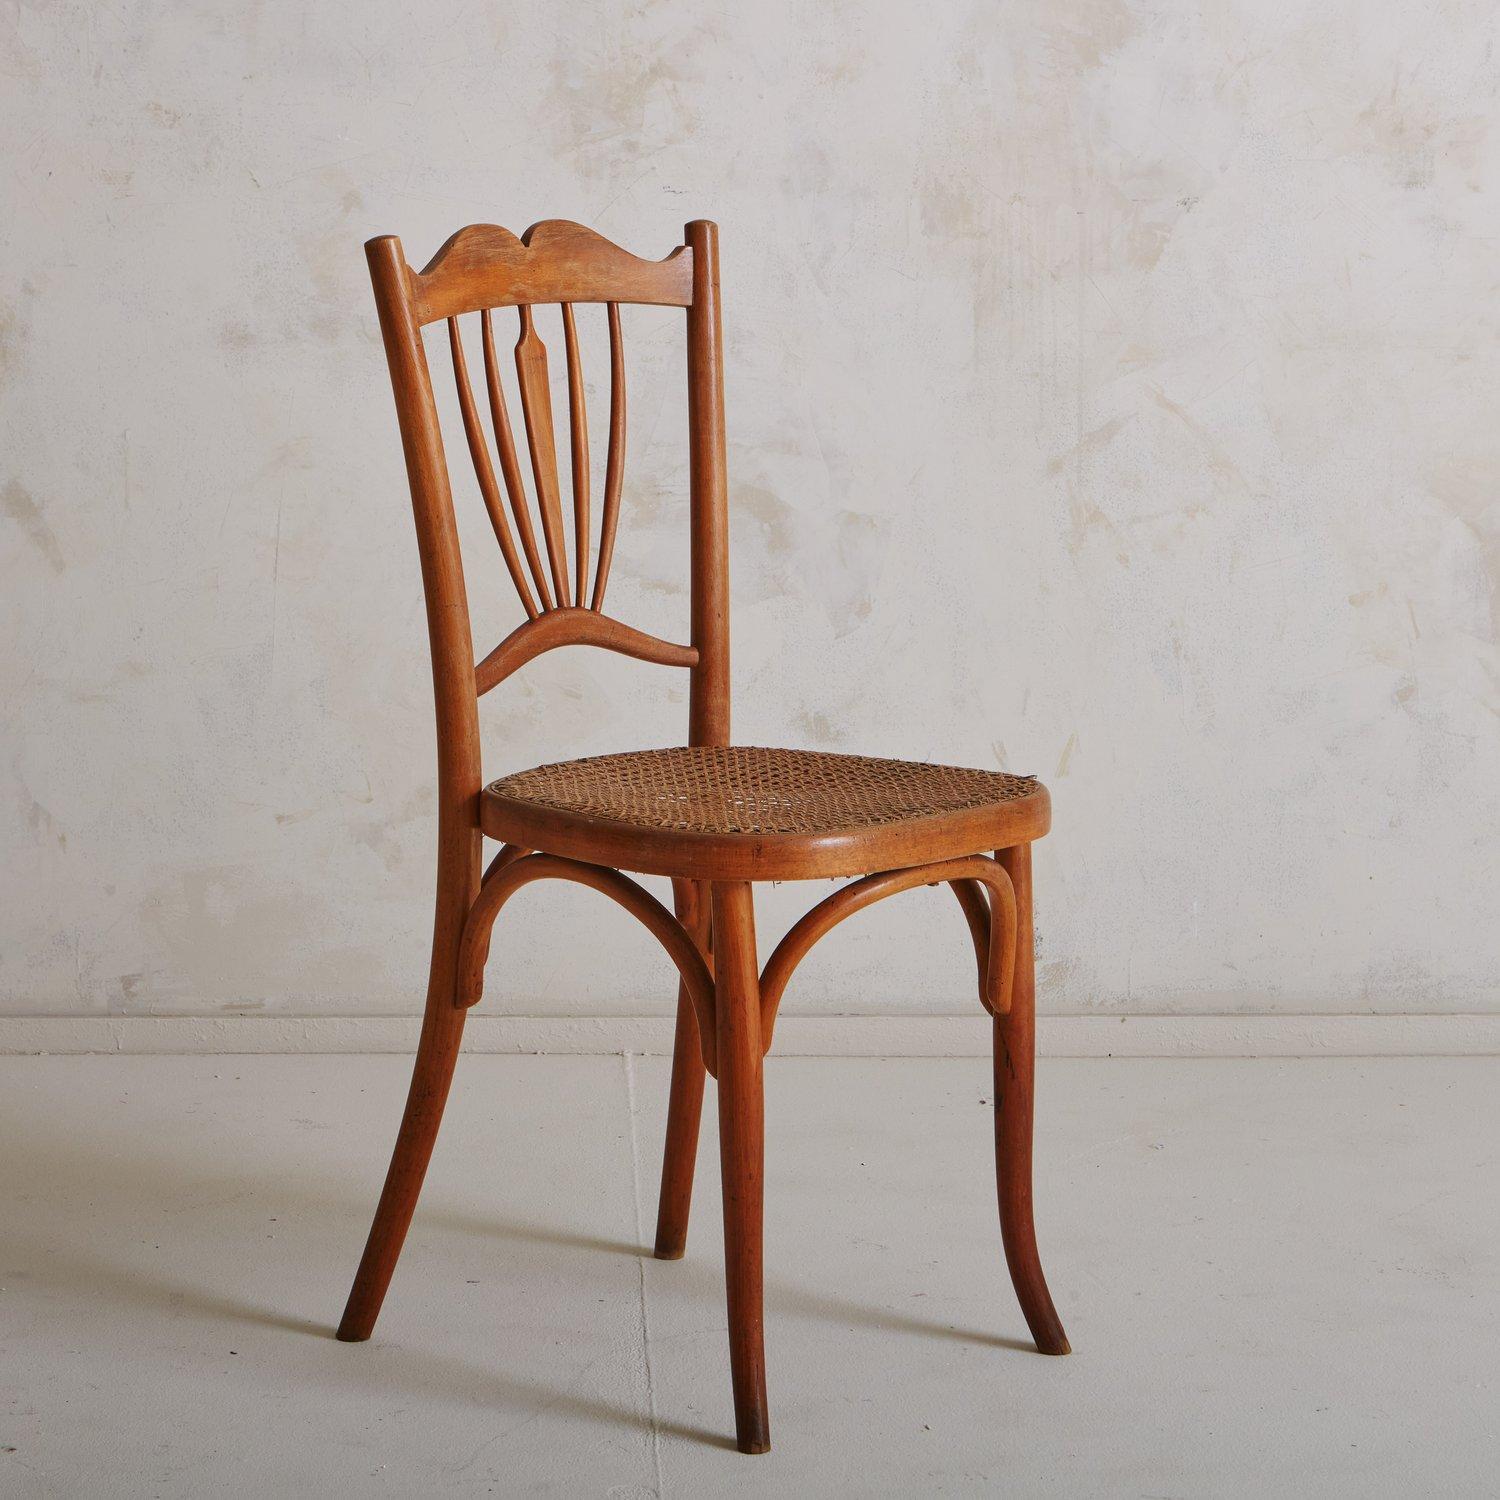 Une chaise vintage attribuée à Fischel avec un cadre en bois sculpté, un dossier décoratif complexe et une assise en rotin. Cette pièce est documentée dans le catalogue Fischel n° 150. Provenance : France, début des années 1900.

